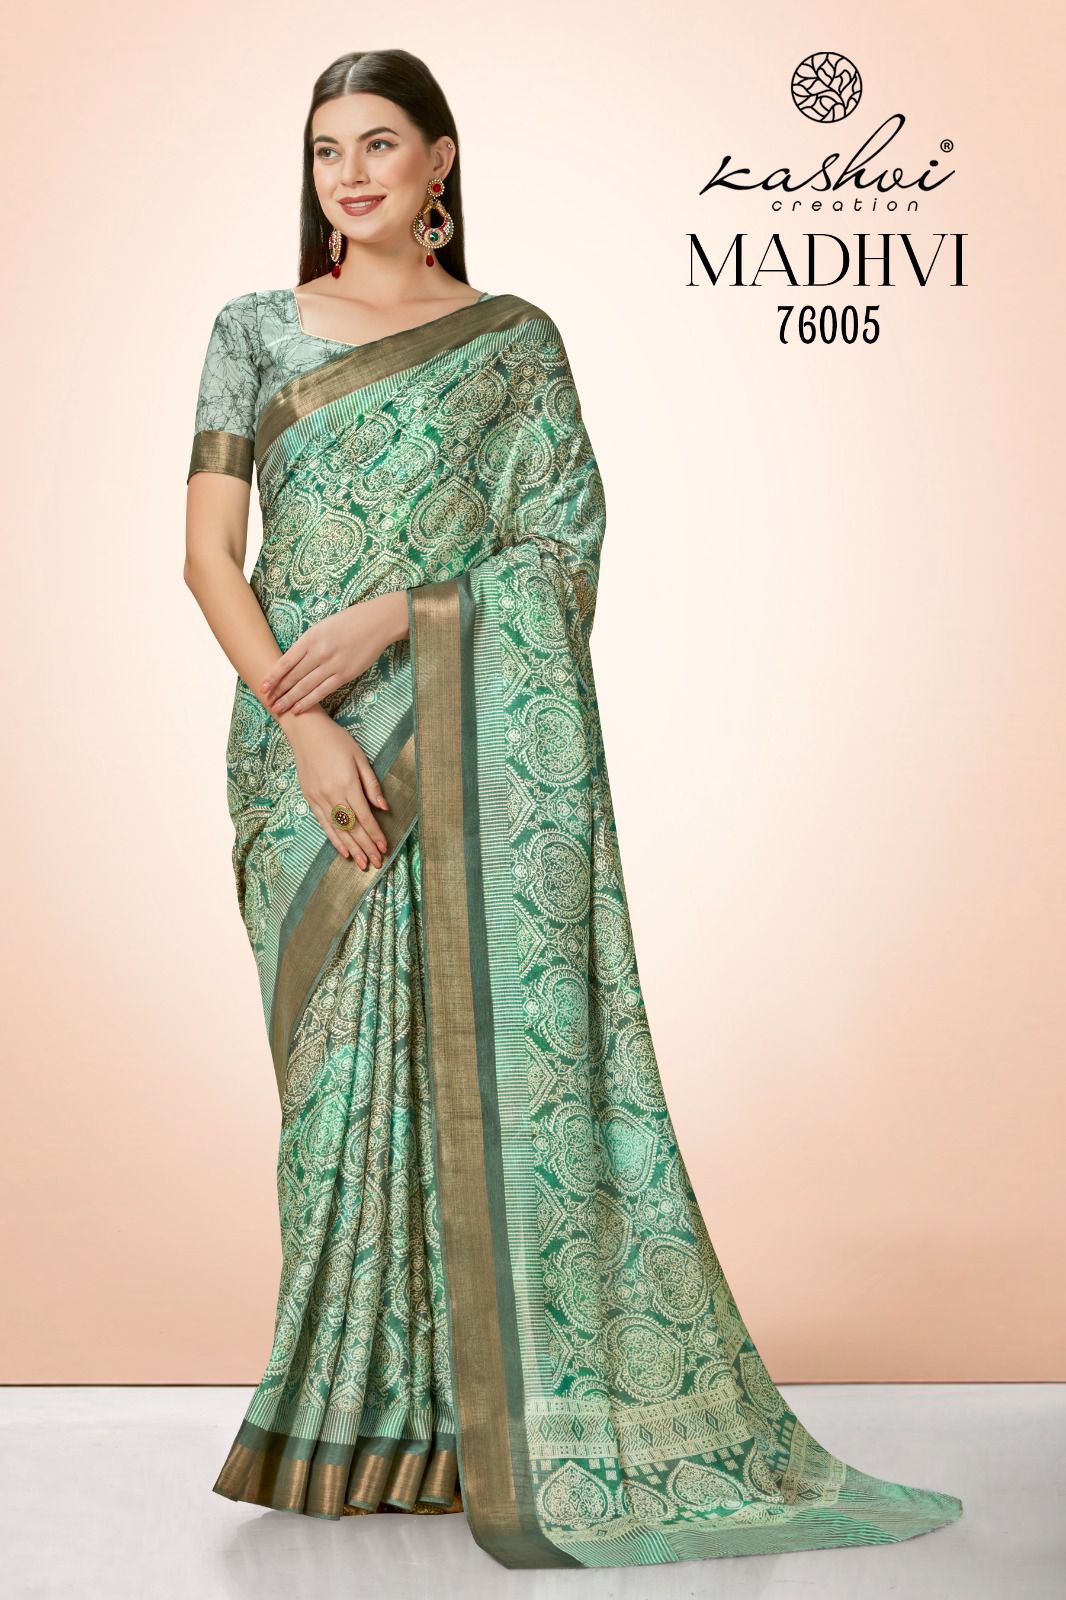 lt saree kashvi creation madhvi cotton silk innovative print saree catalog